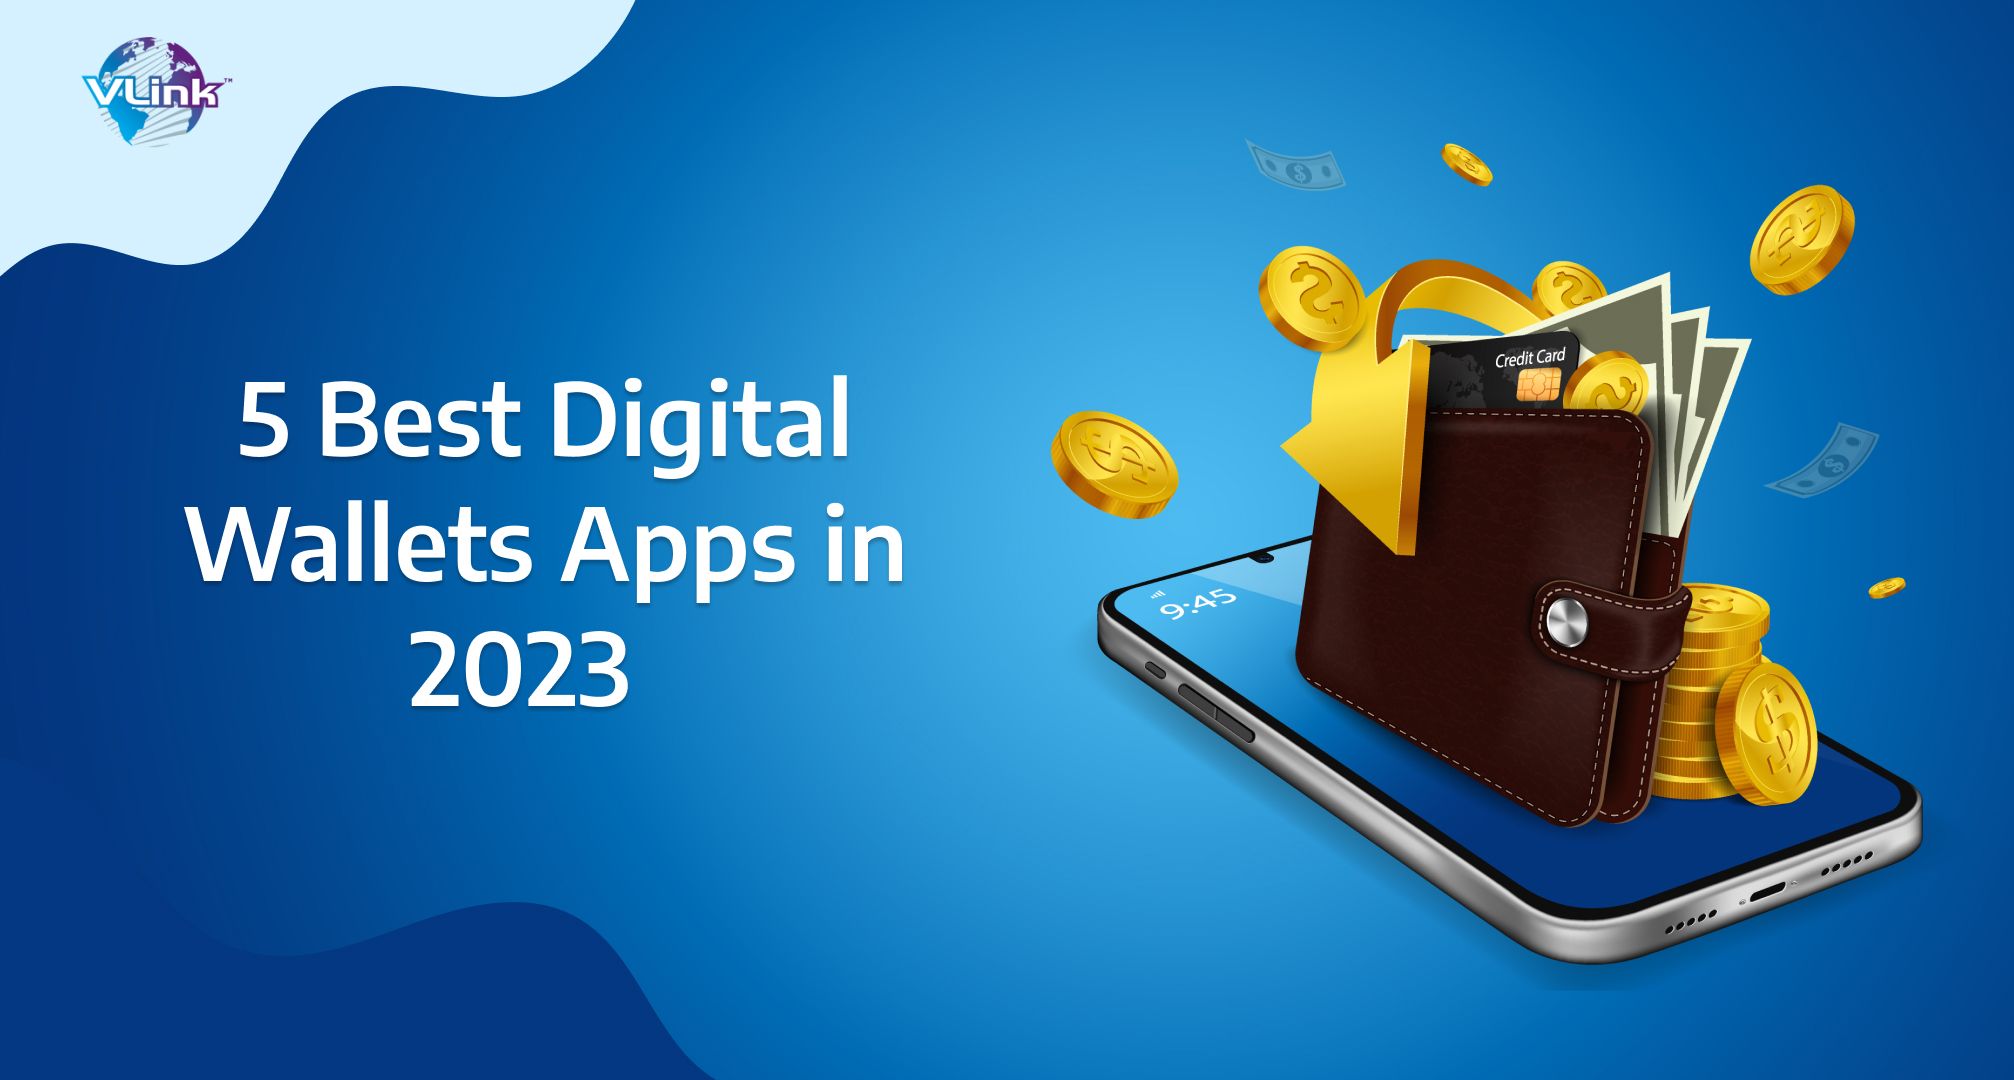 5 Best Digital Wallets Apps in 2023